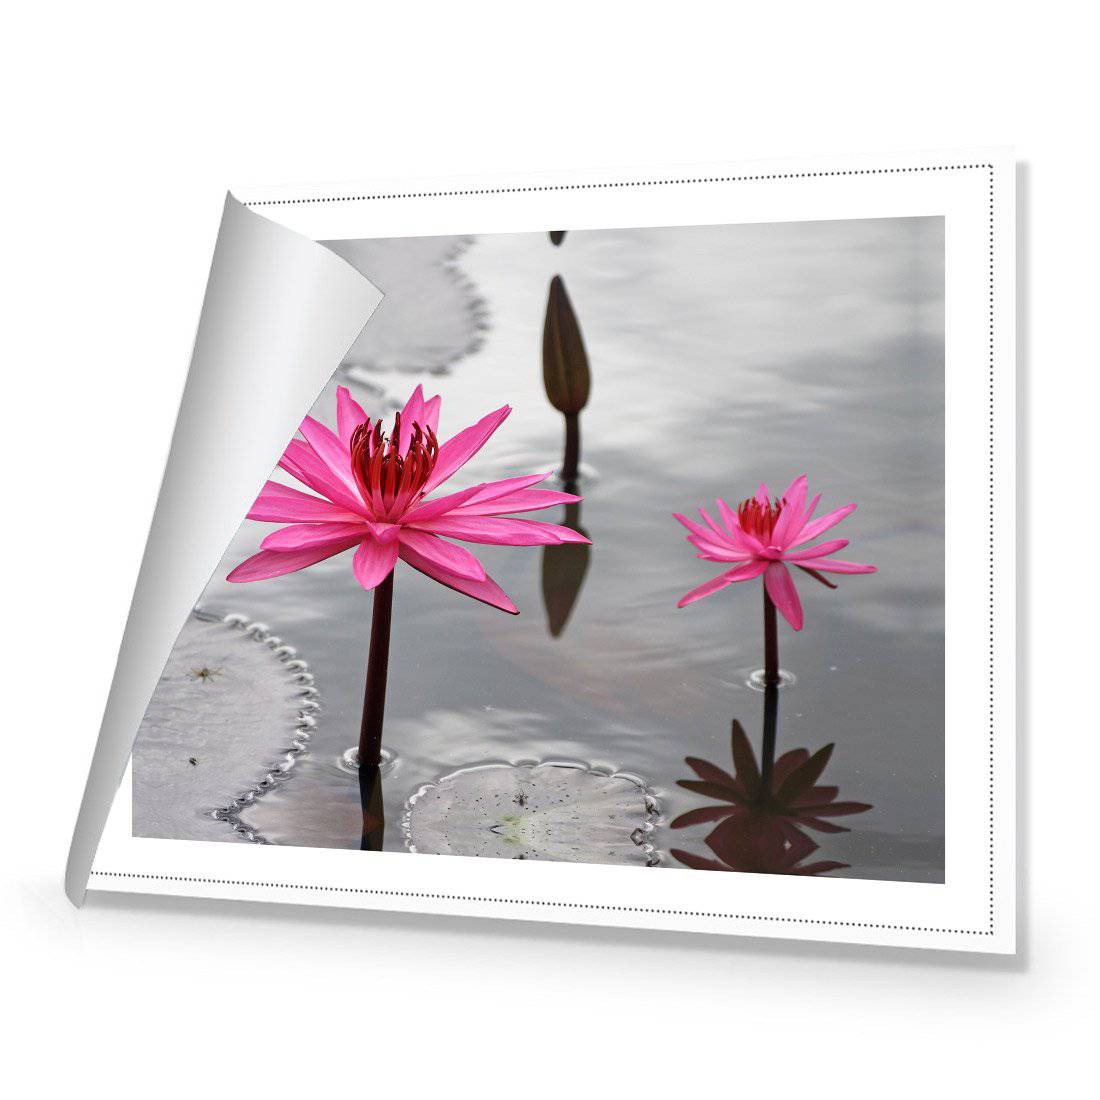 Pop Pink Lilies Canvas Art-Canvas-Wall Art Designs-45x30cm-Rolled Canvas-Wall Art Designs